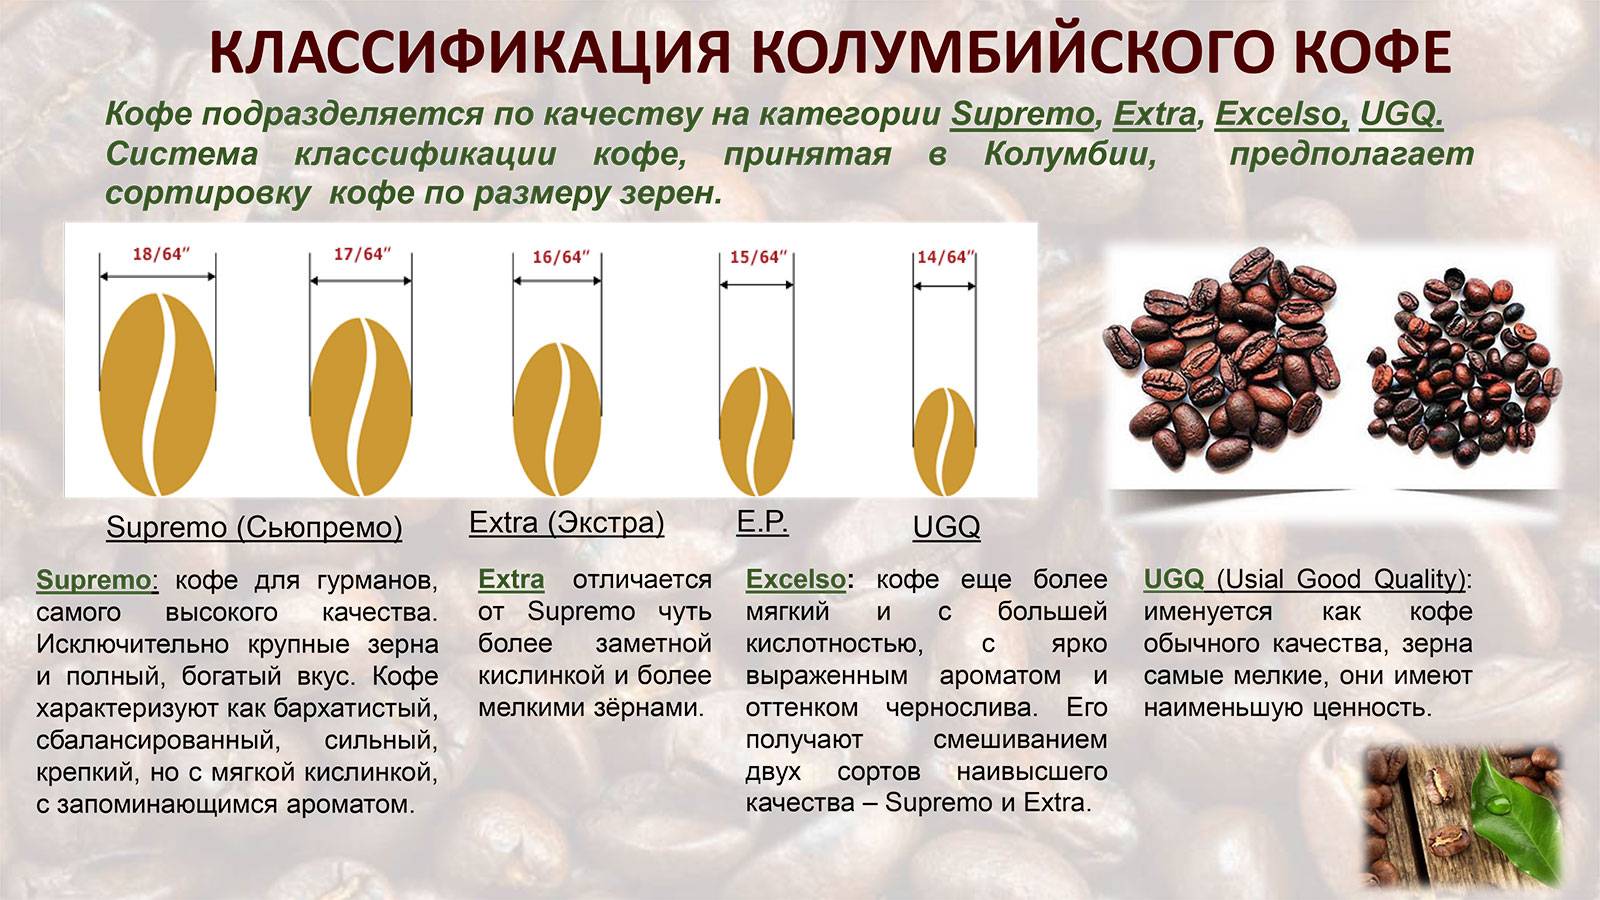 Кофе либерика: происхождение, особенности сорта кофейных зерен, виды, как пить